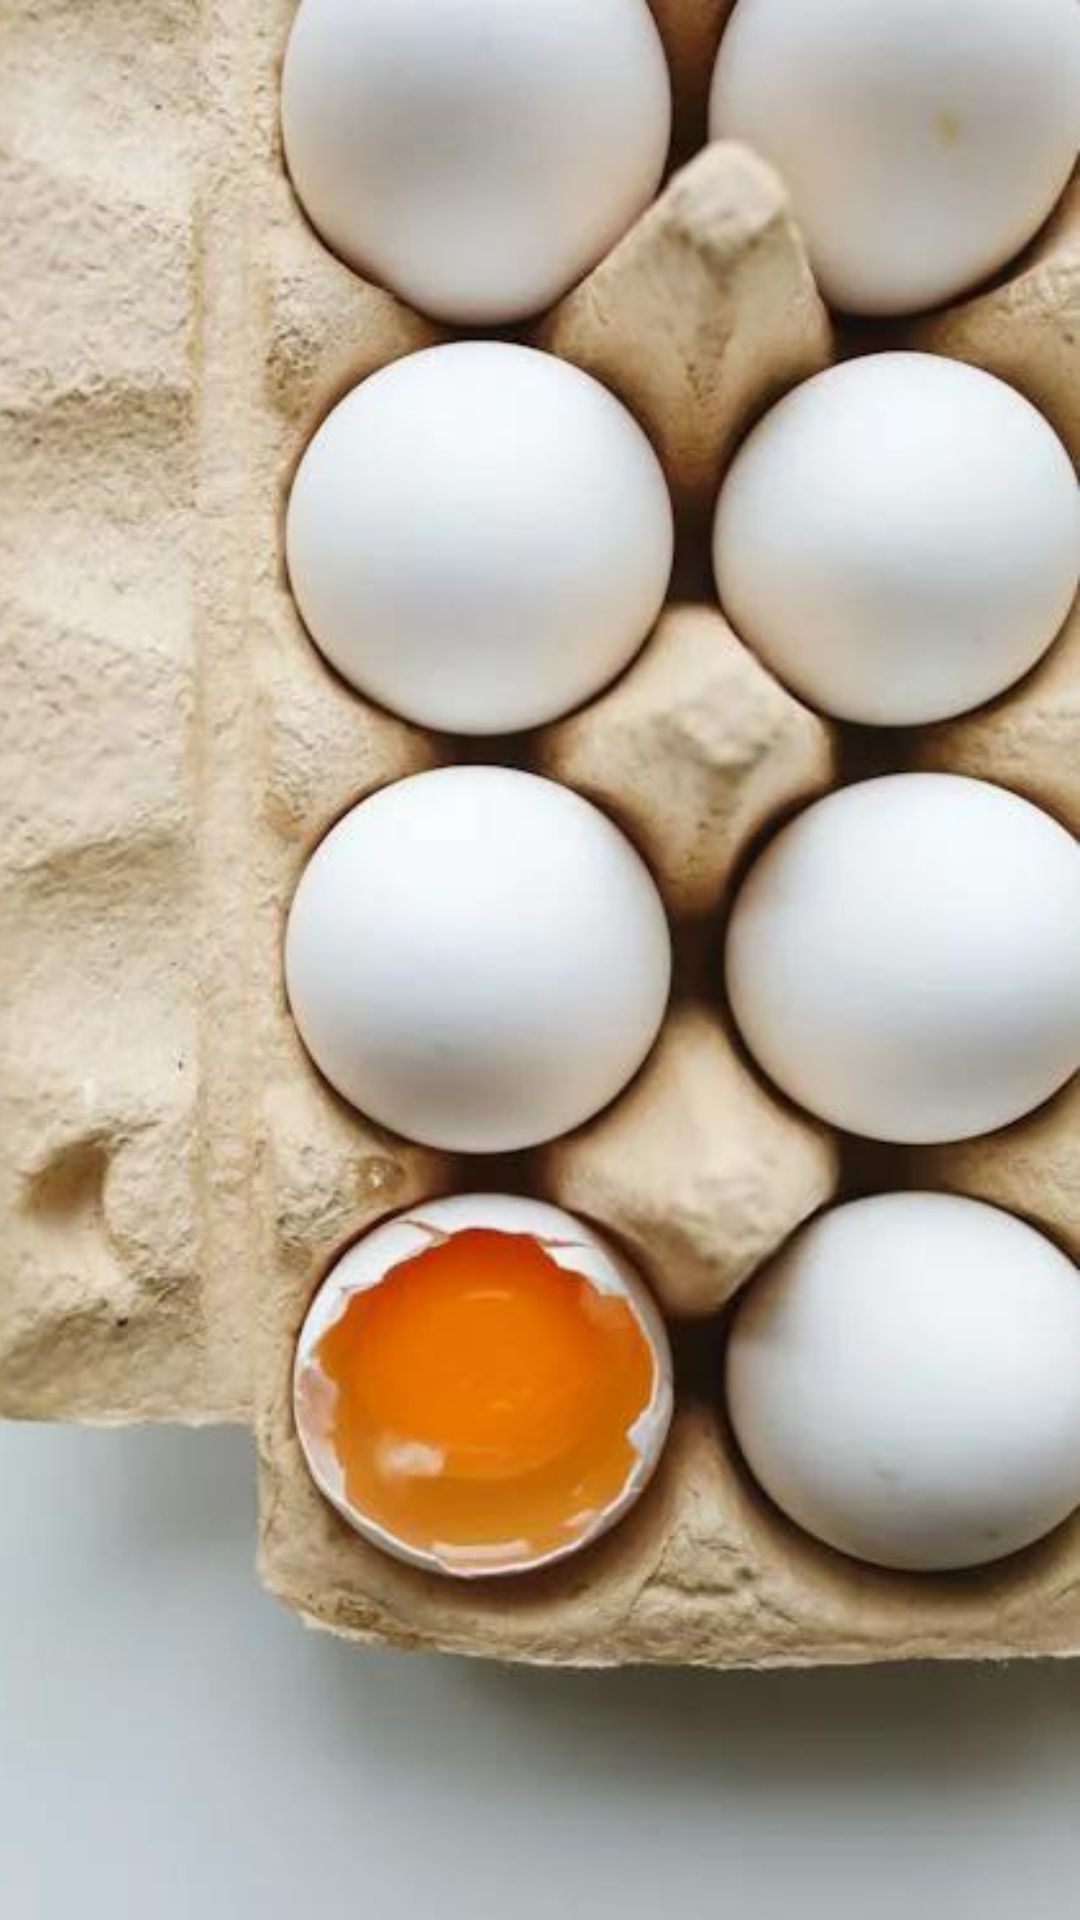 भारत में सबसे ज्यादा अंडे का प्रोडक्शन कहां होता है?